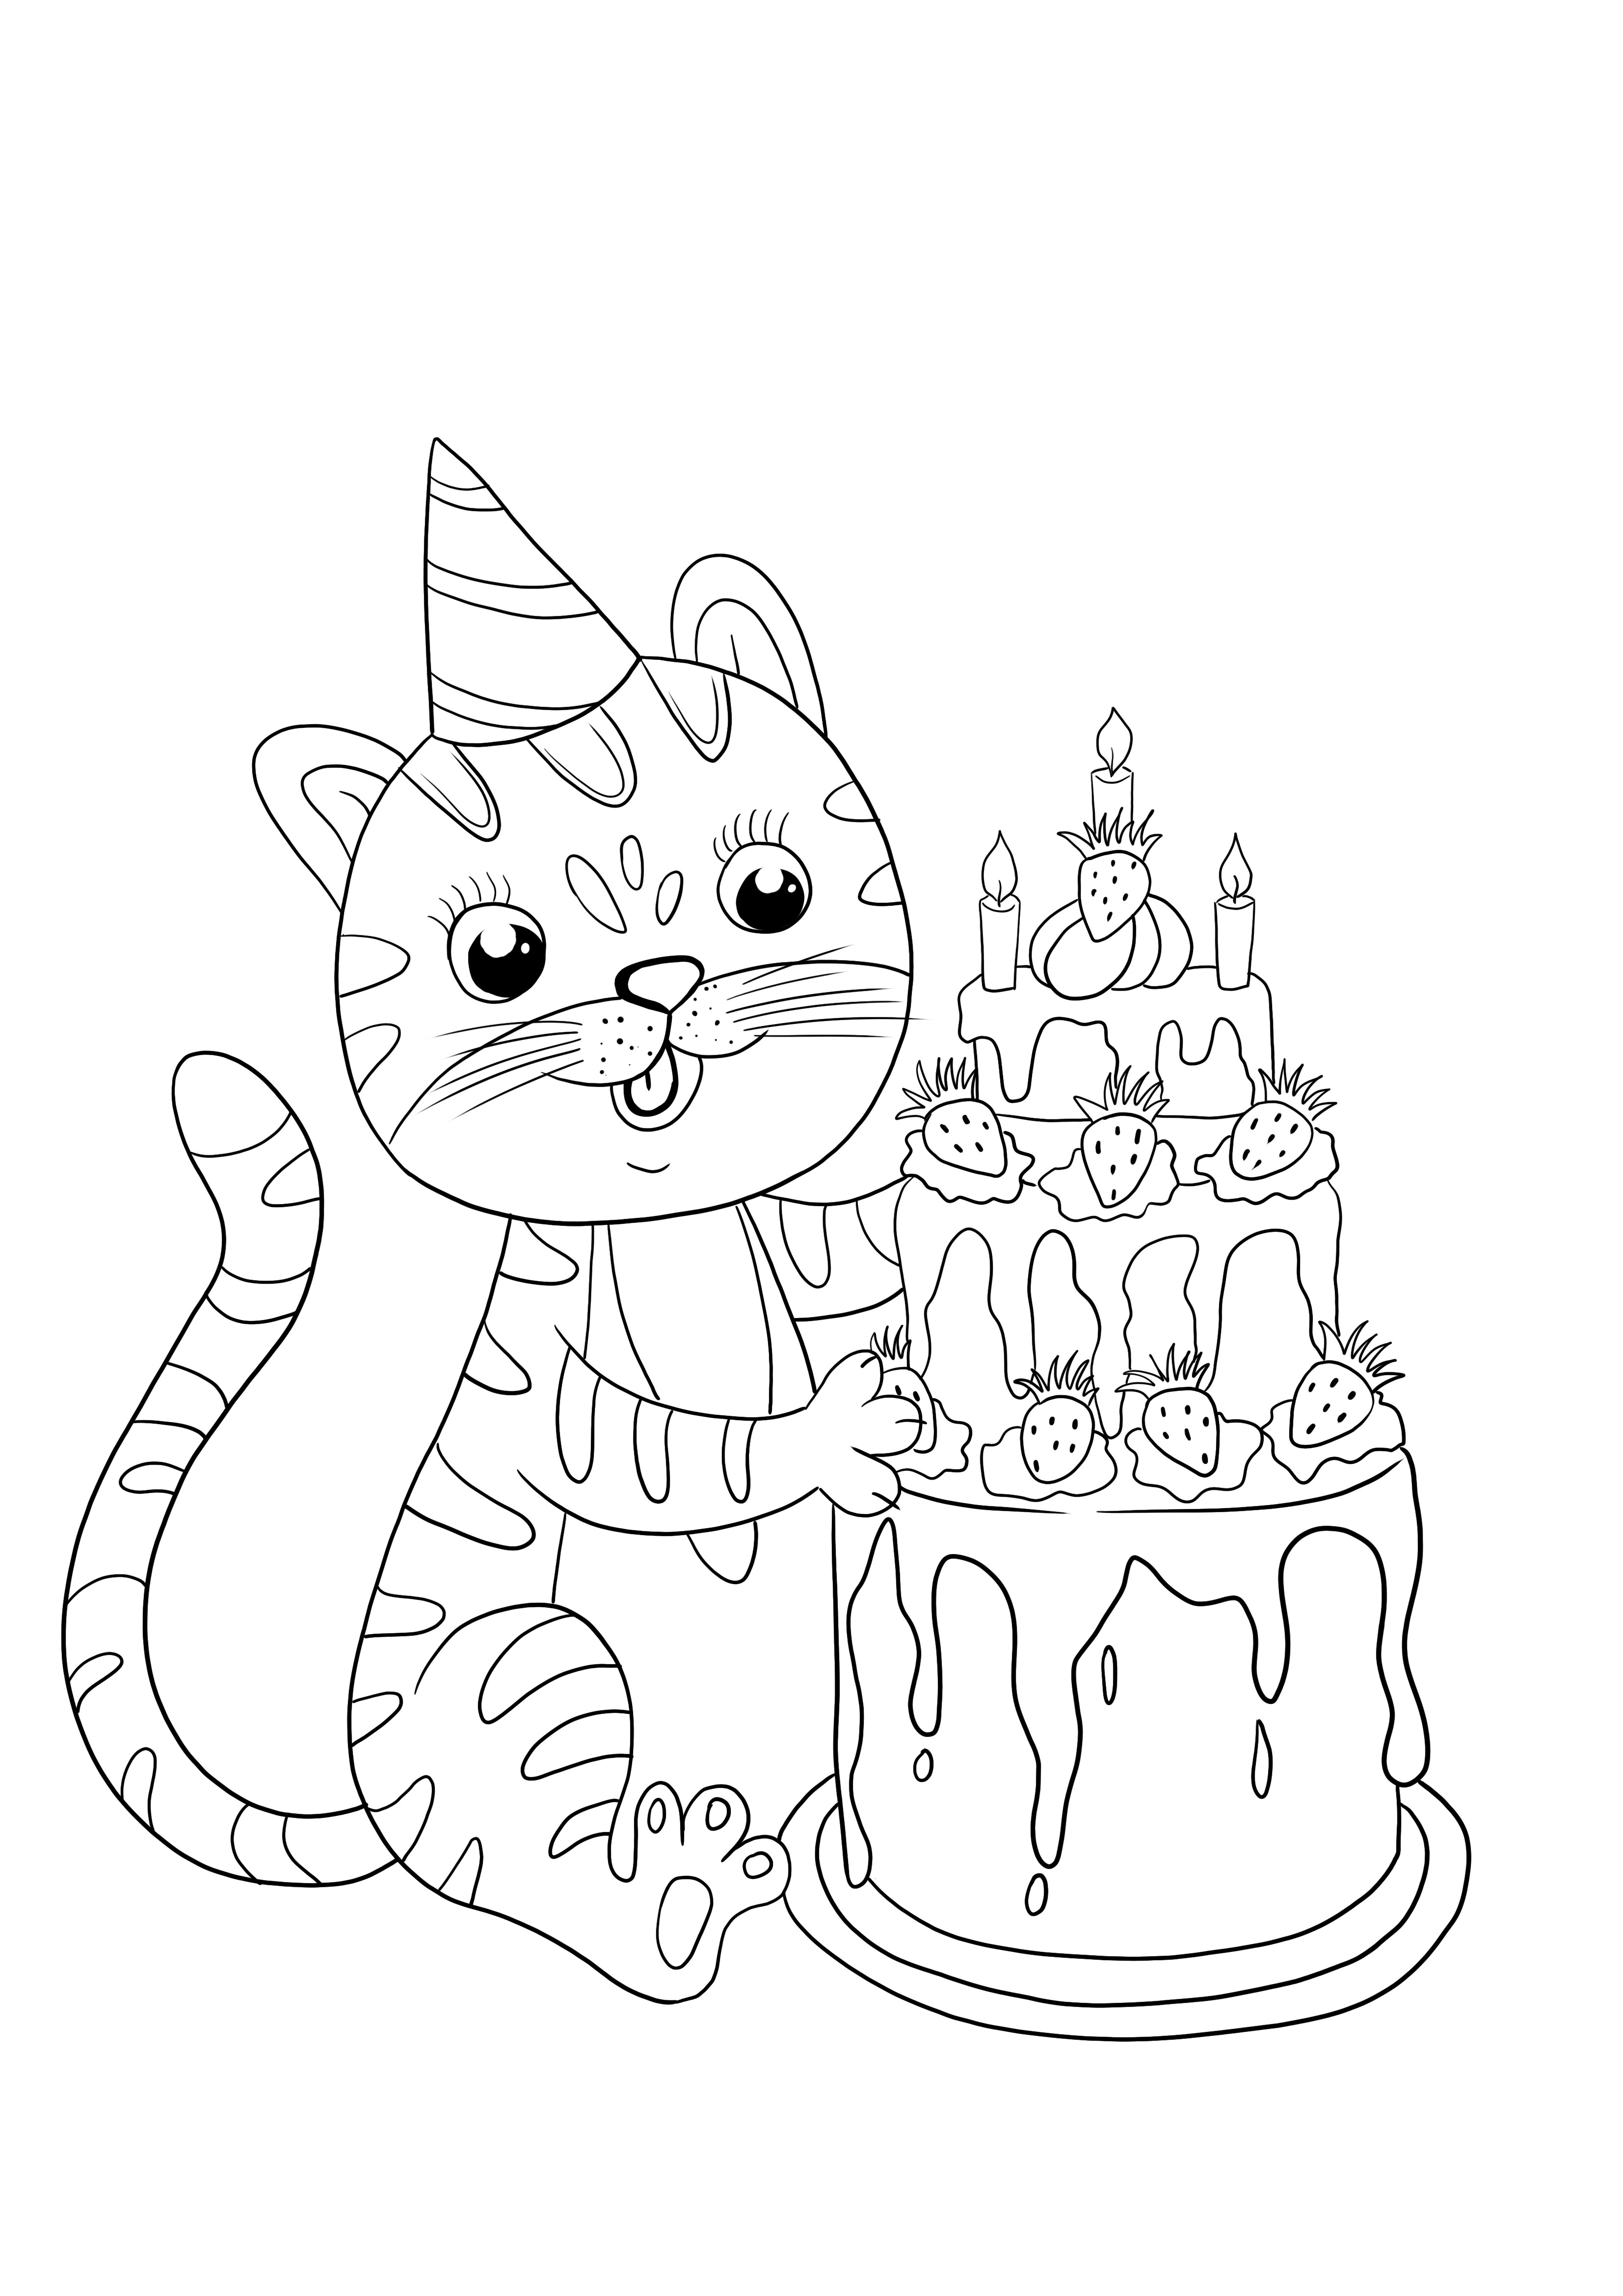 Kartu kucing ulang tahun untuk anak-anak untuk diwarnai dan dicetak